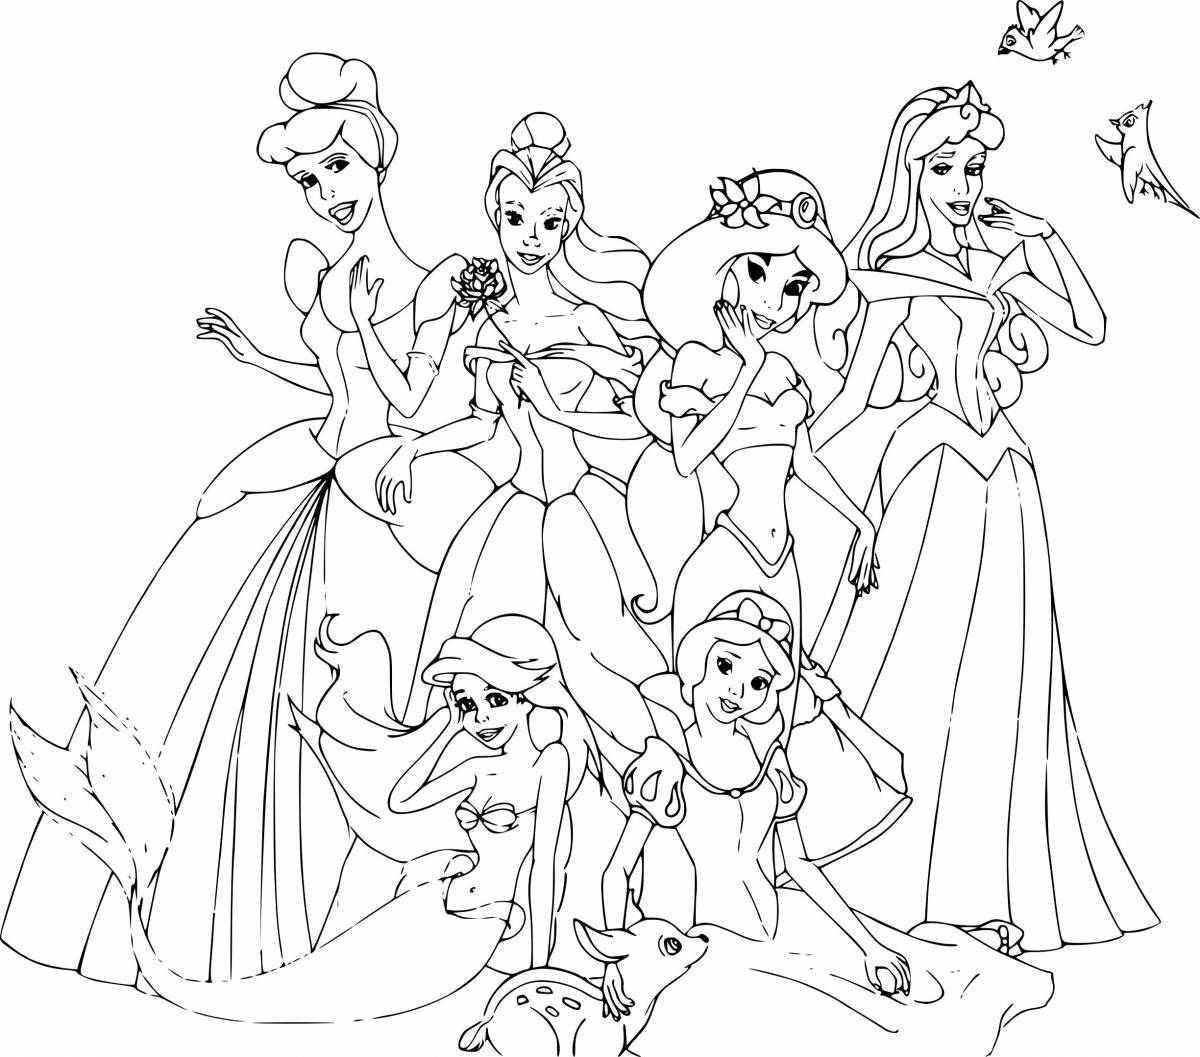 Magic coloring game with disney princesses